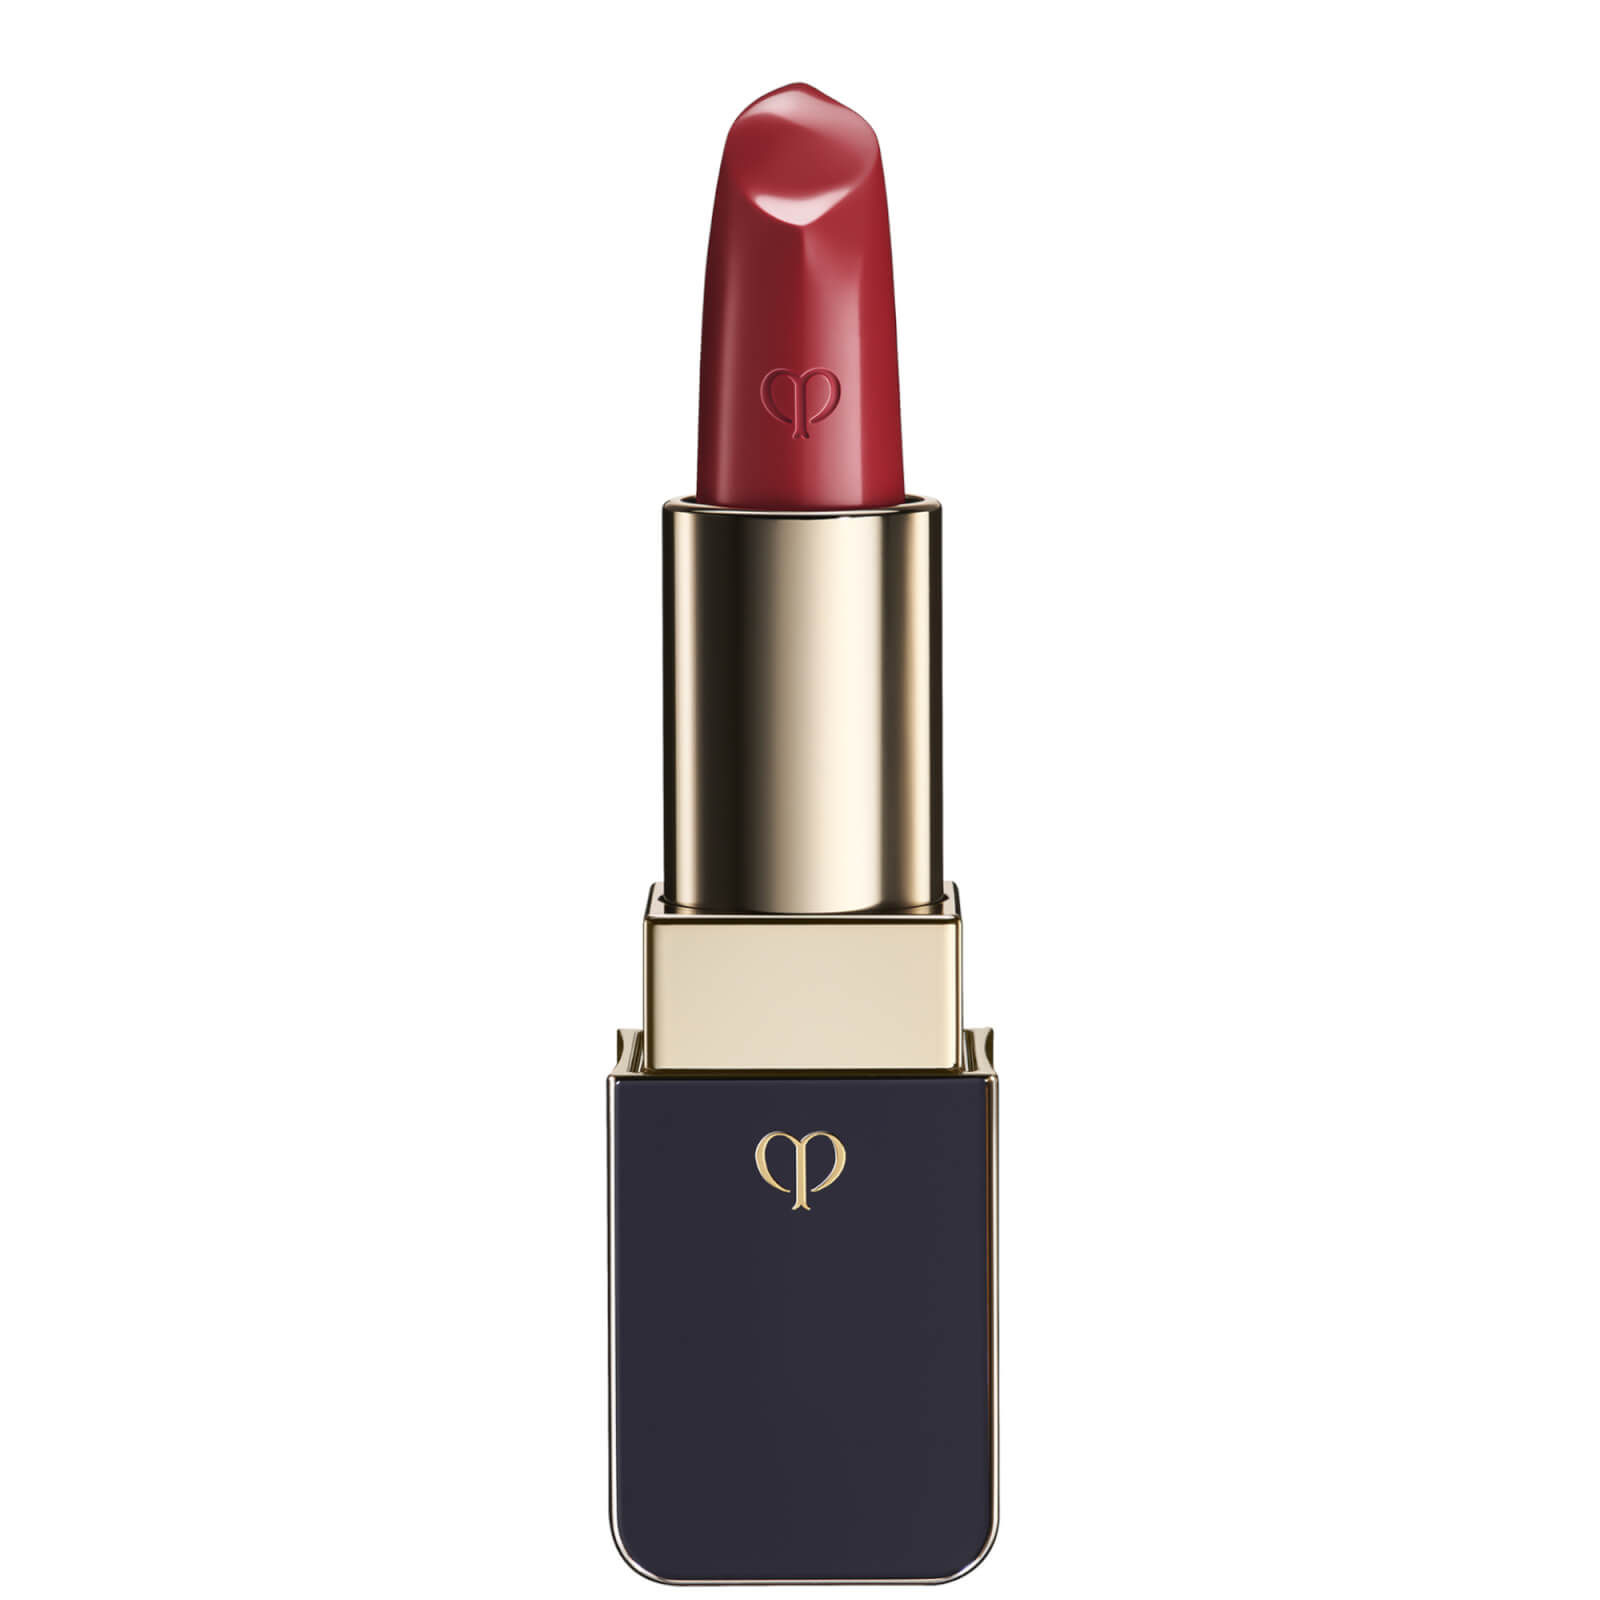 Image of Clé de Peau Beauté Lipstick 4g (Various Shades) - 18 Refined Red